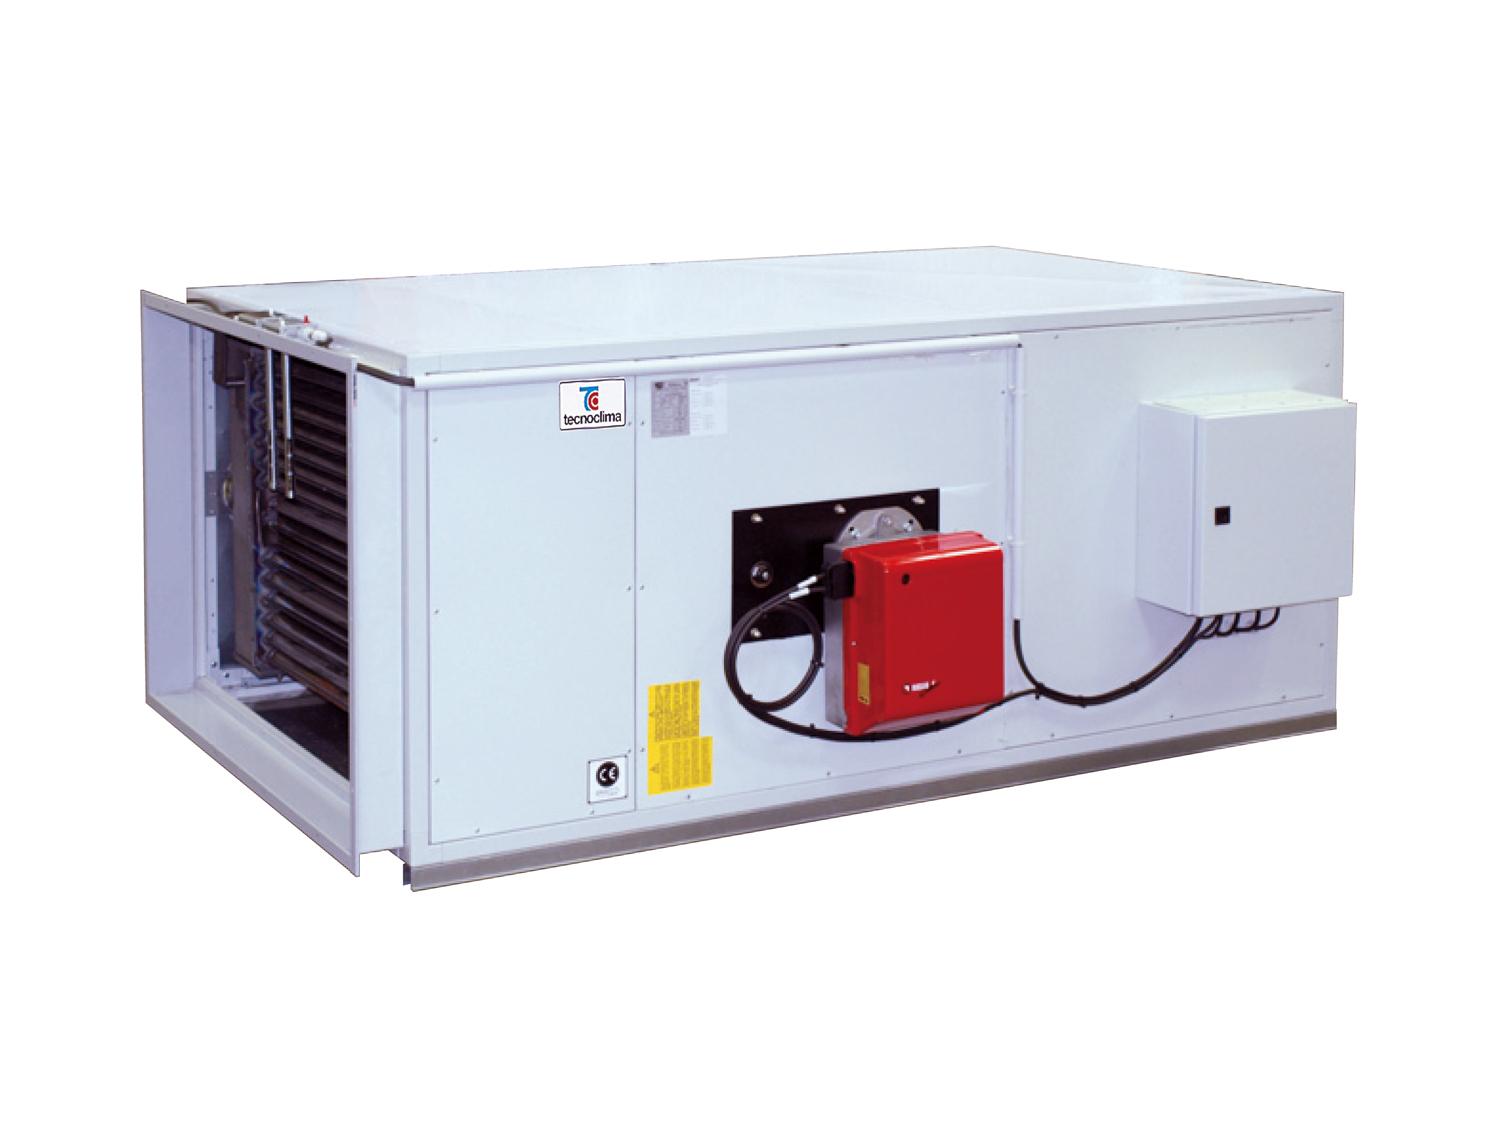 ENERGY-O Generatori aria calda basamento Tecnoclima